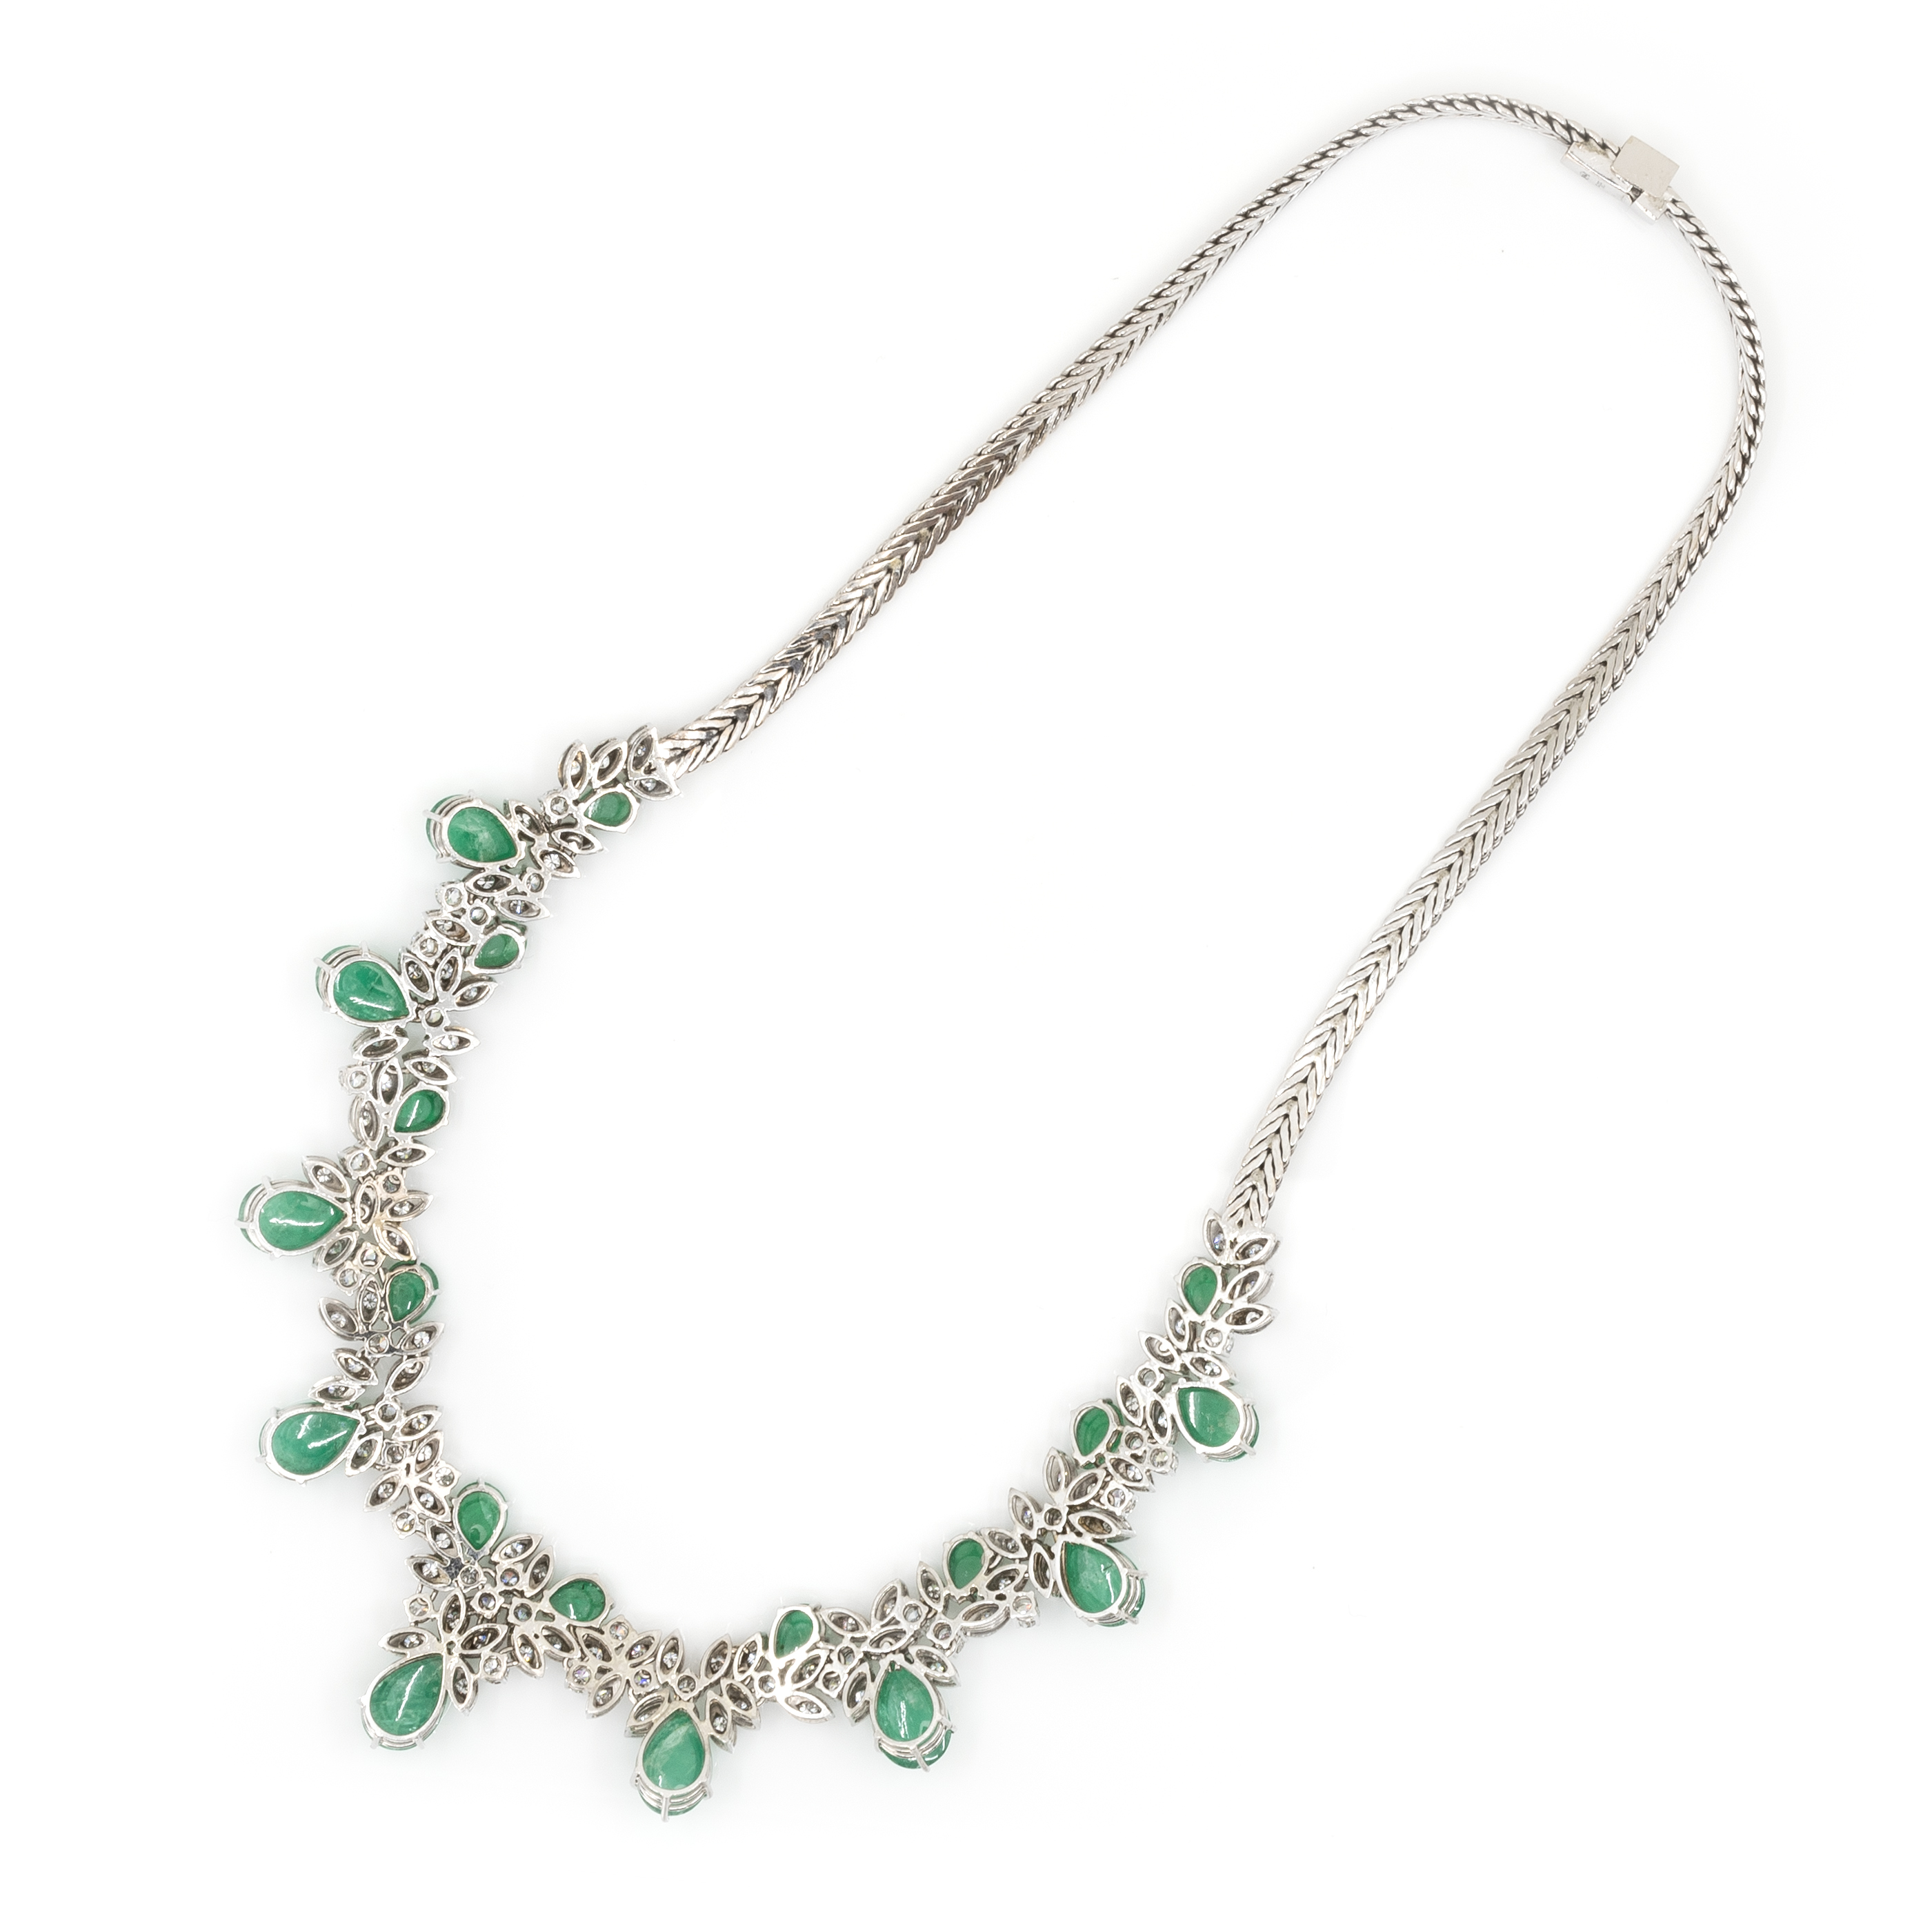 Collier und Armband mit Smaragd-Diamantbesatz - Image 4 of 8